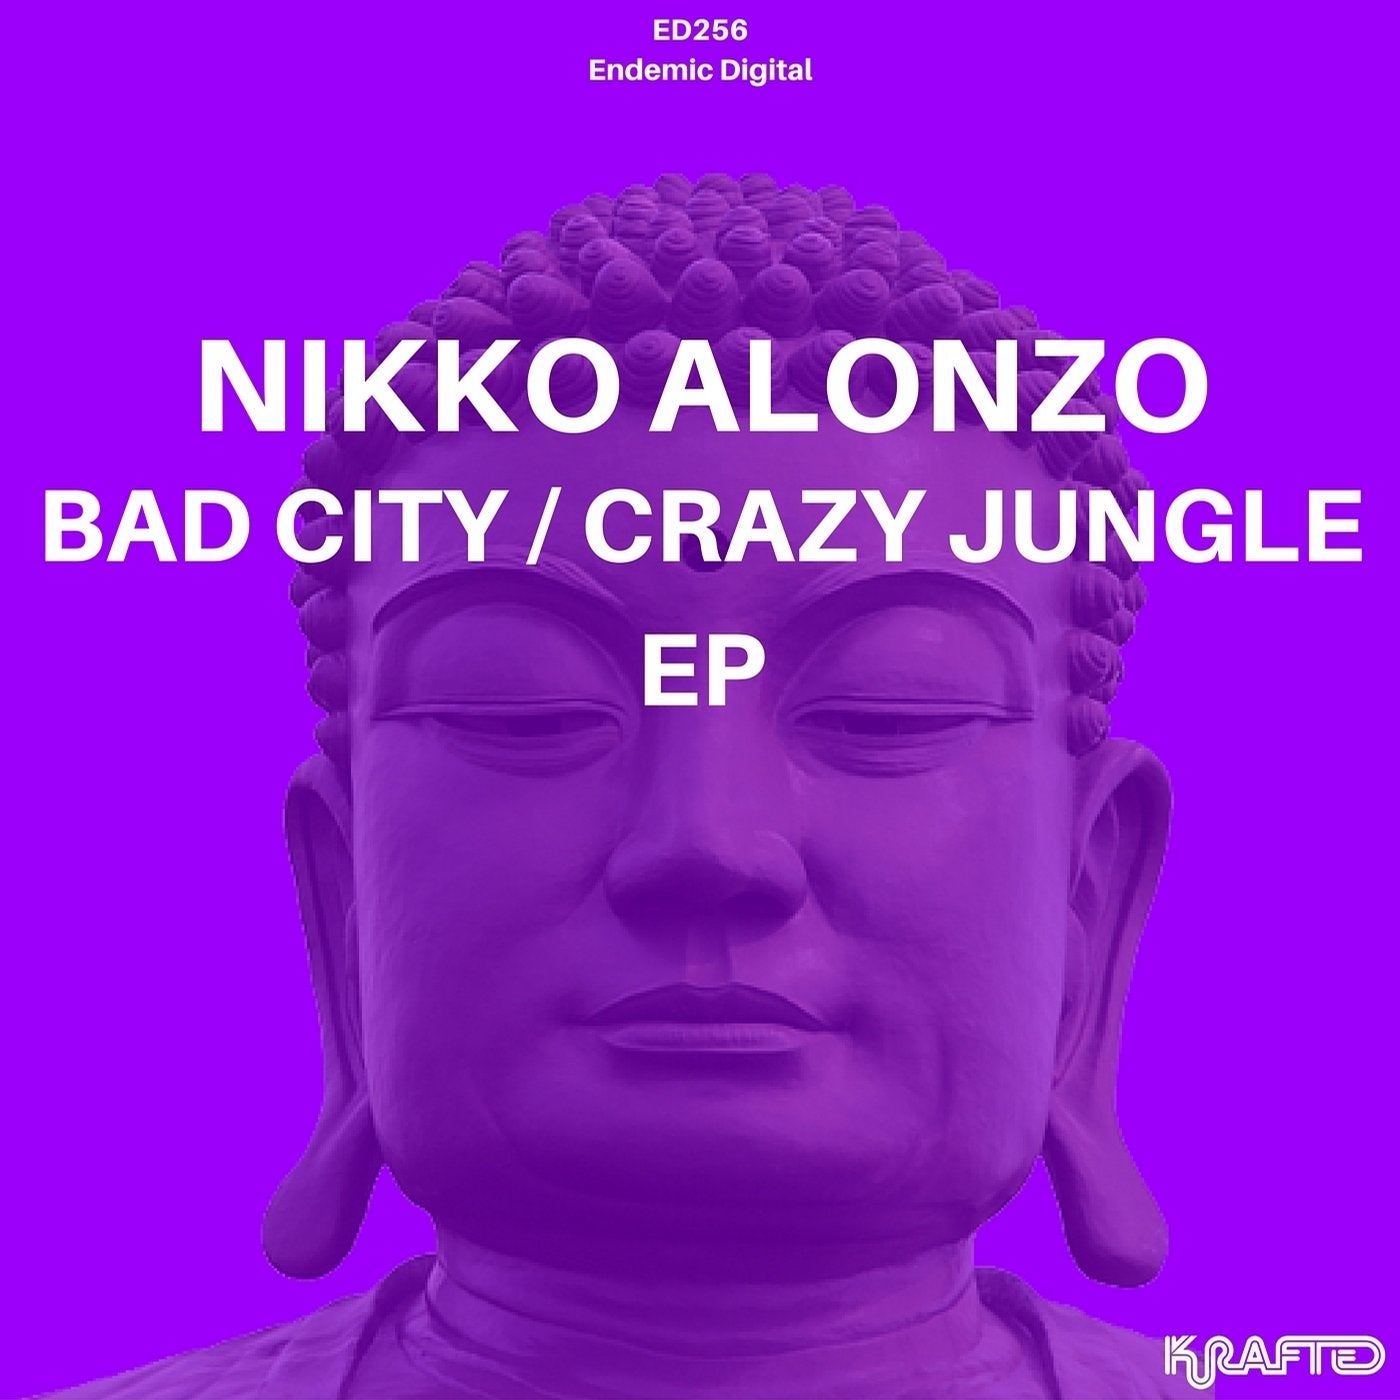 Bad City / Crazy Jungle